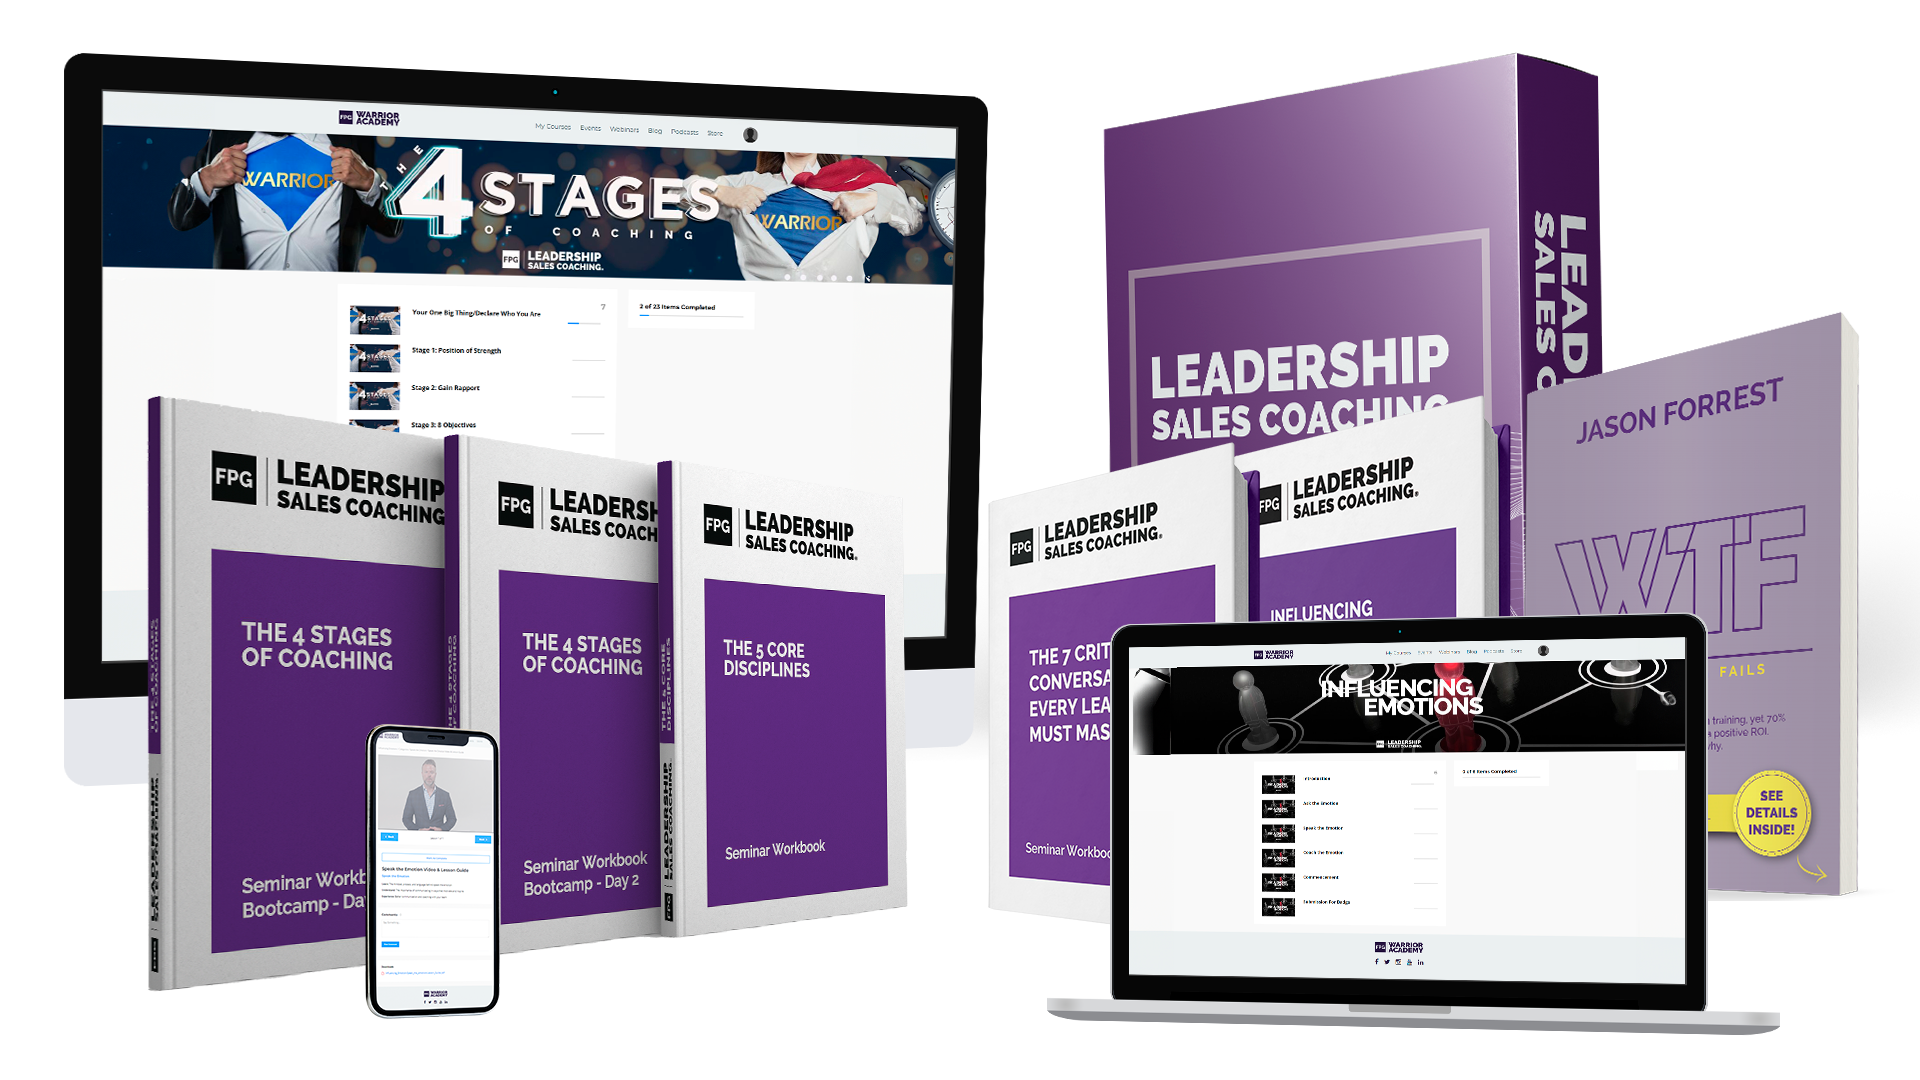 Leadership Sales Coaching KIT